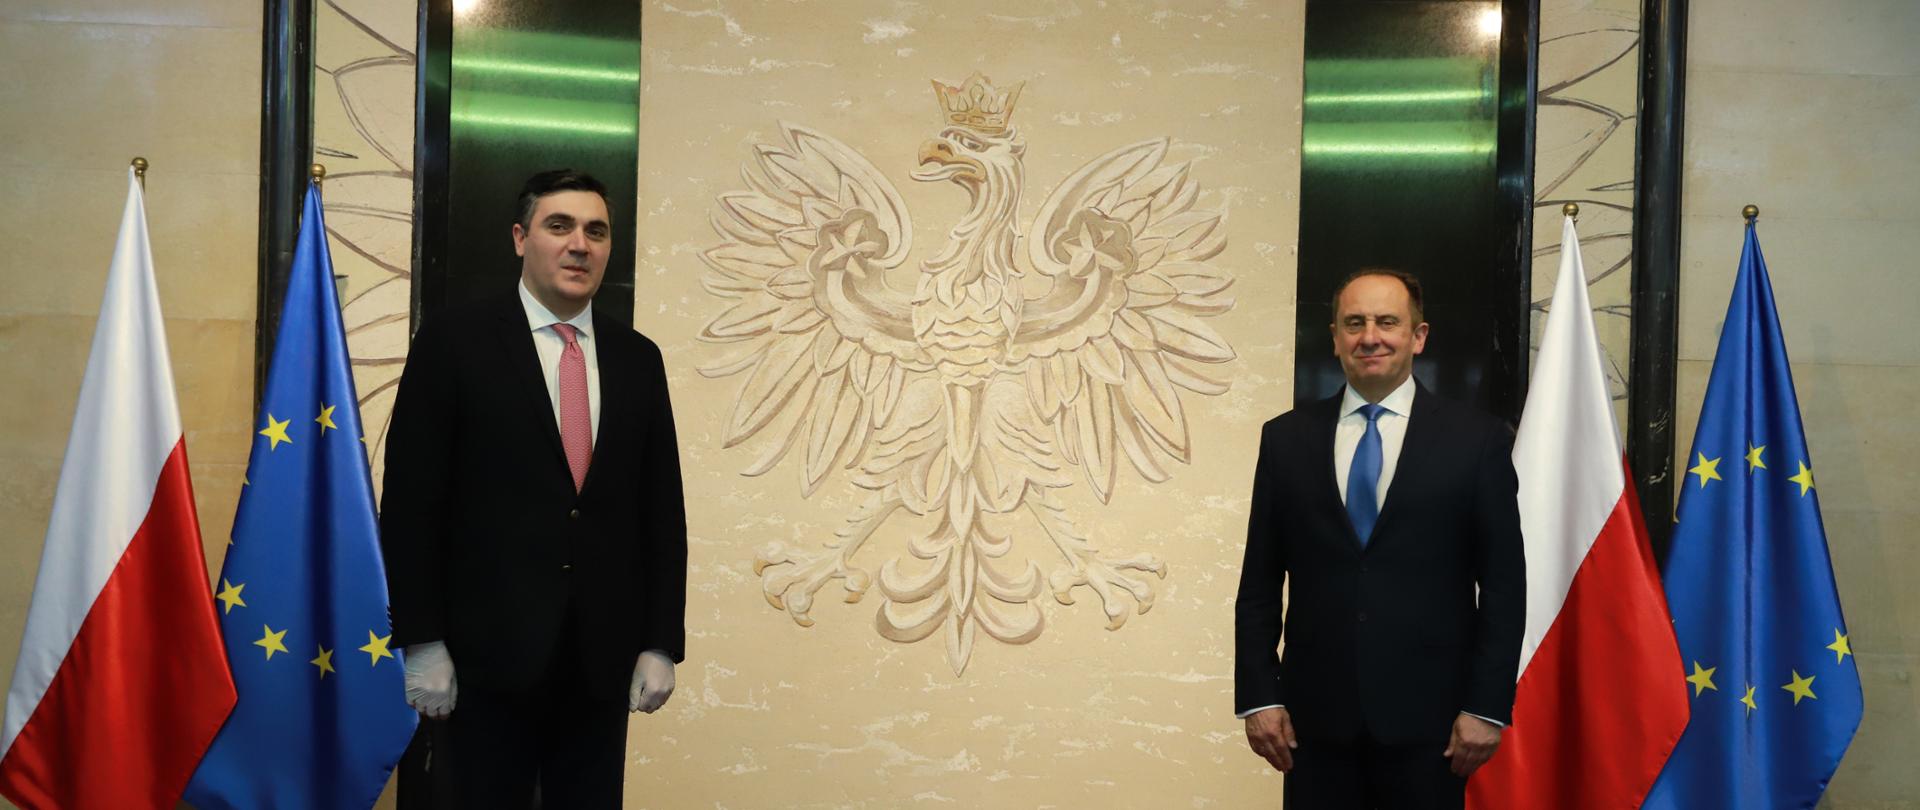 Ambasador Gruzji Ilia Darchiashvili i minister Andrzej Gut-Mostowu pozują do zdjęcia w siedzibie resortu rozwoju.